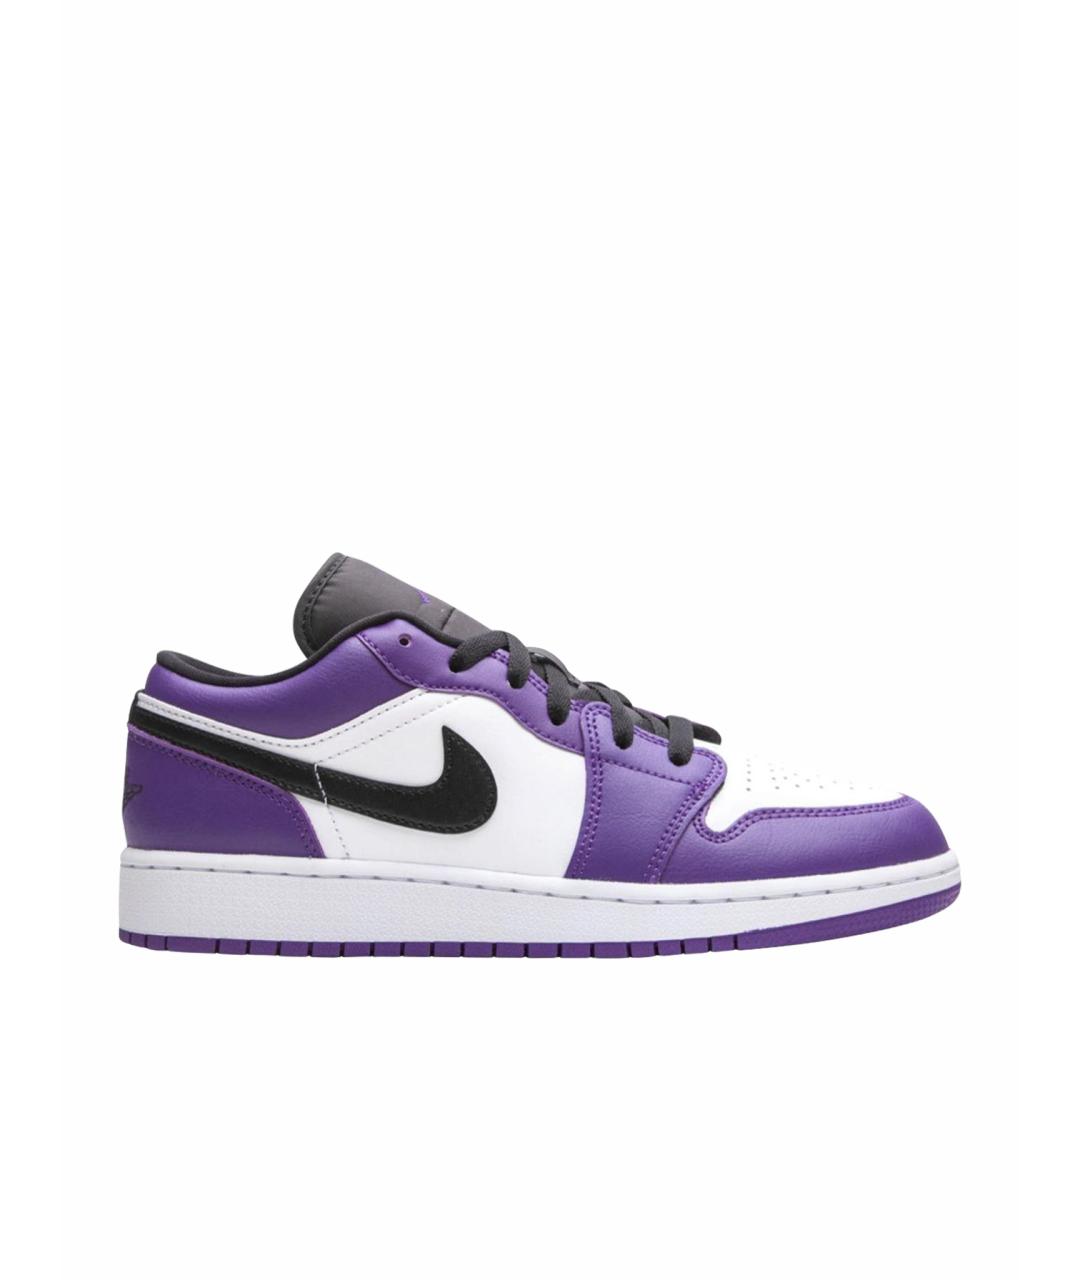 JORDAN Фиолетовые кожаные низкие кроссовки / кеды, фото 1